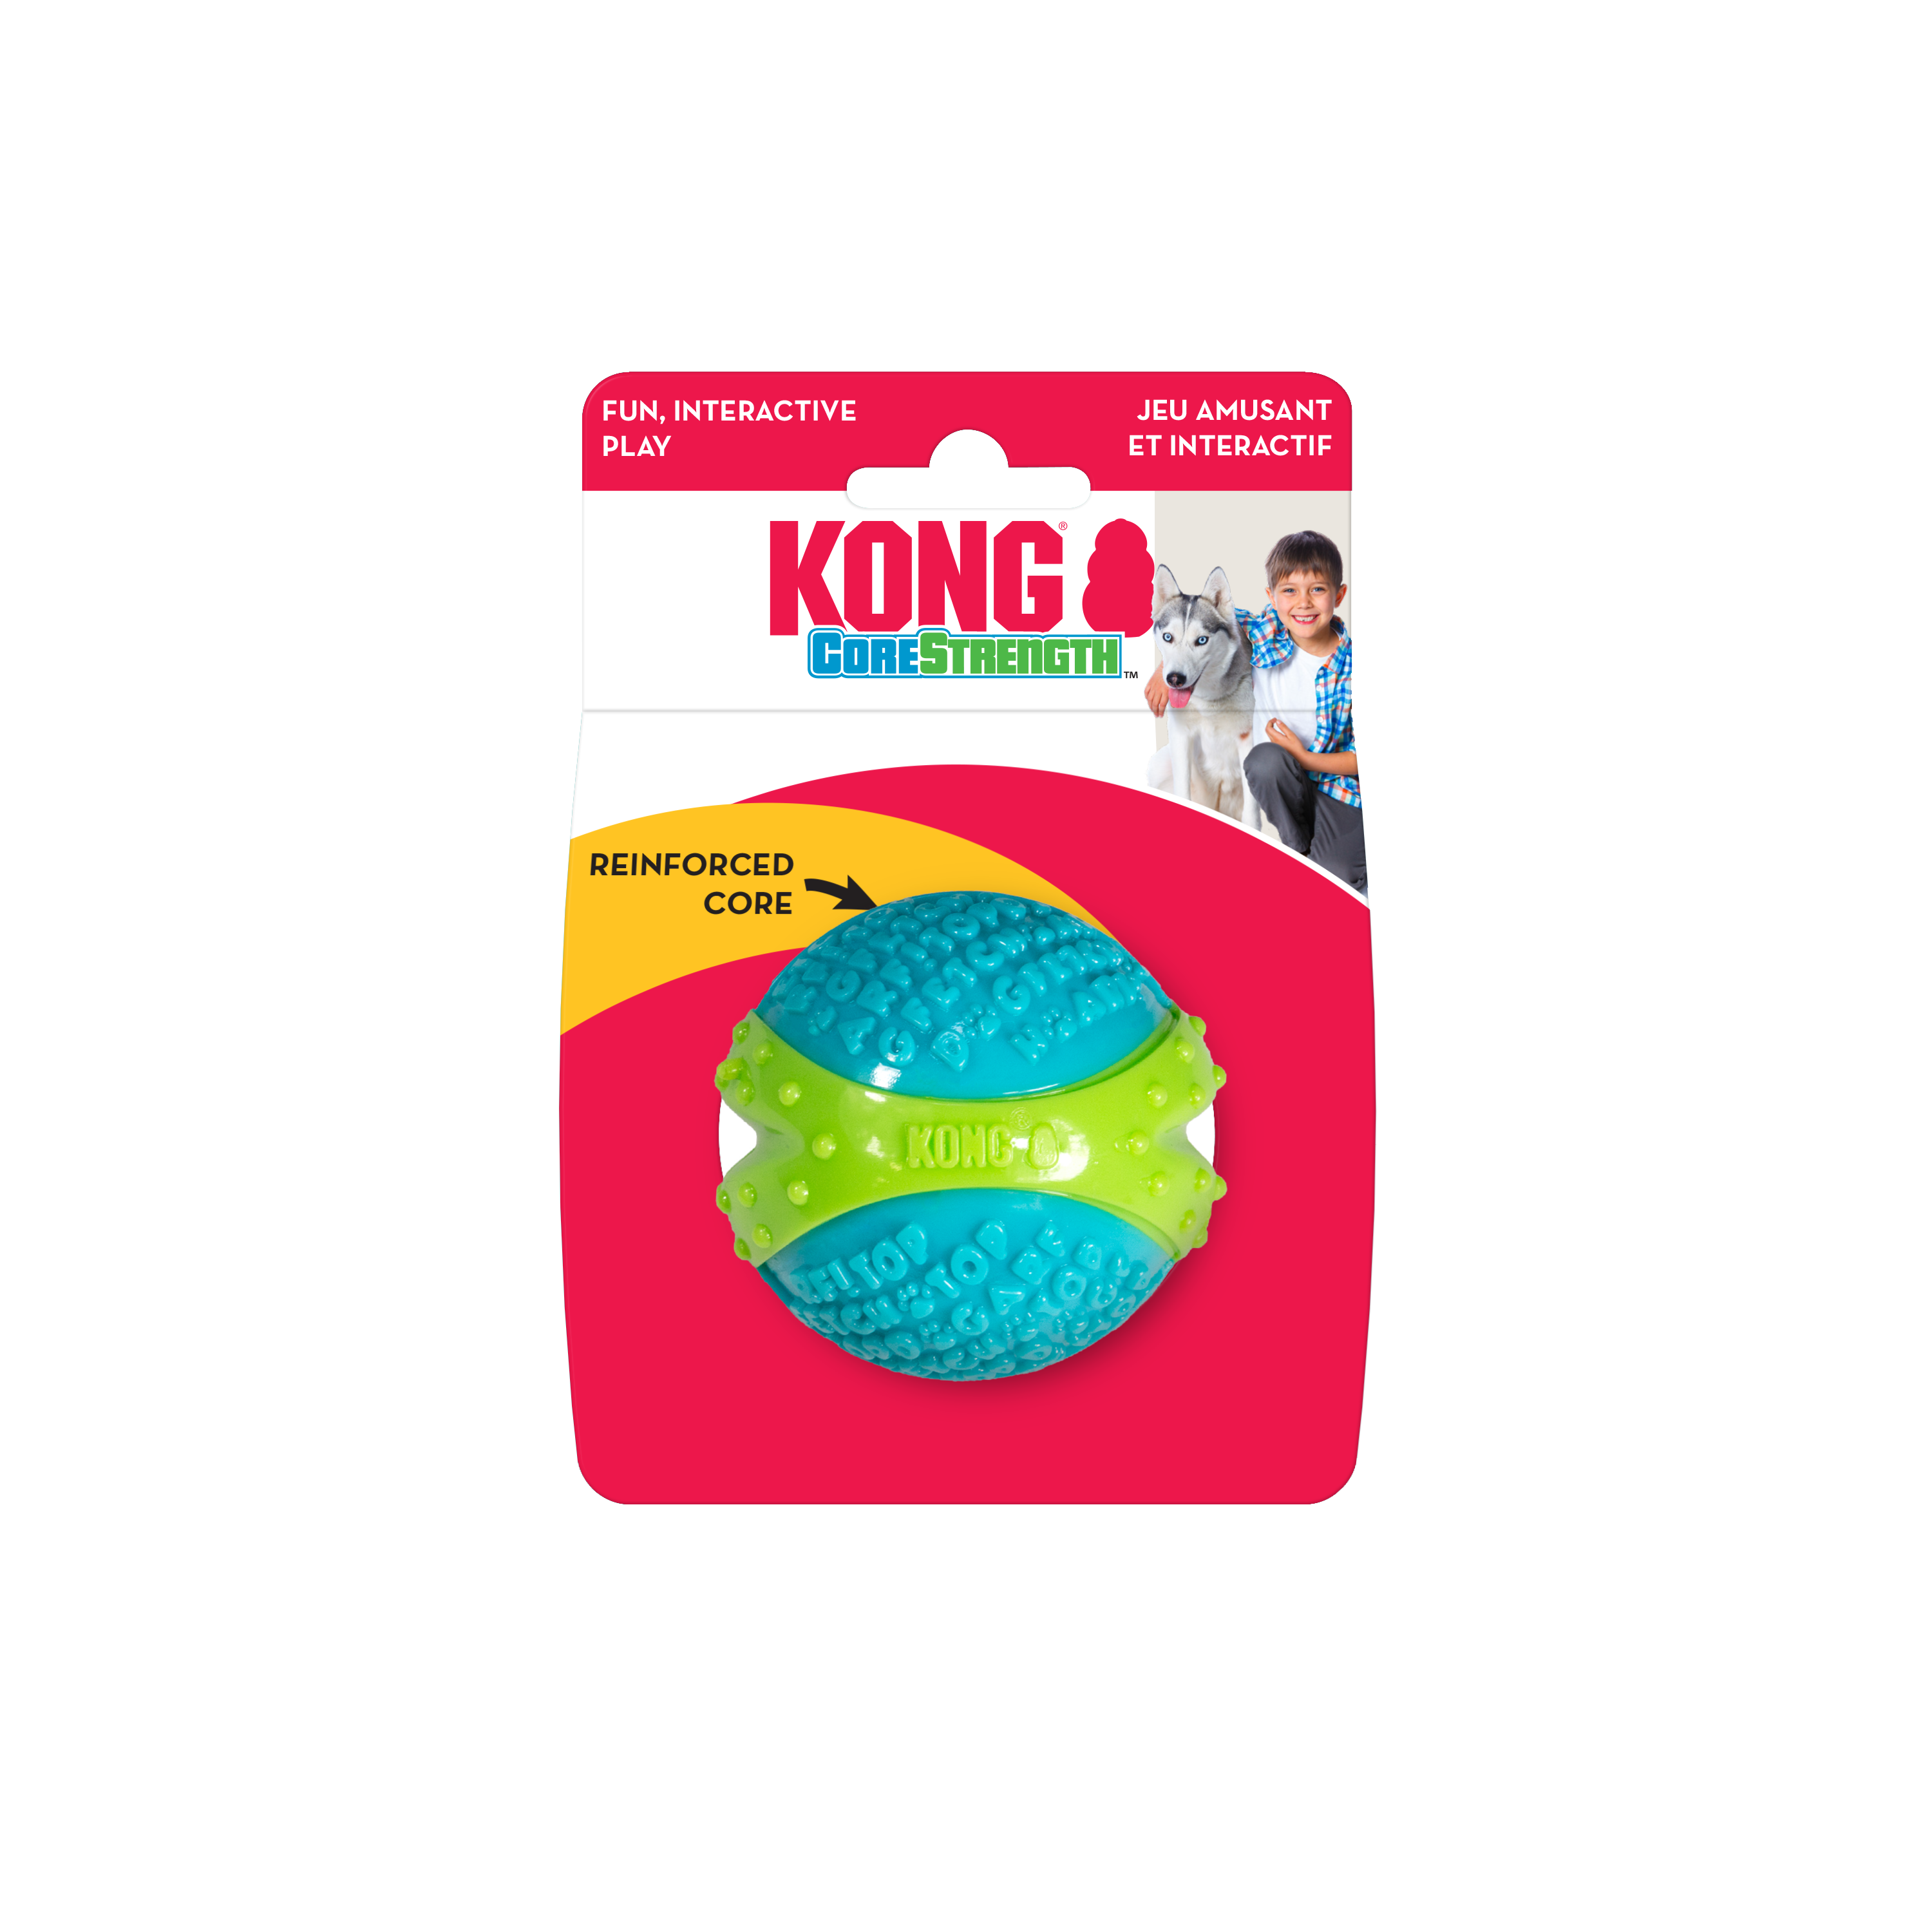 Pelota Corestrength Ball de Kong